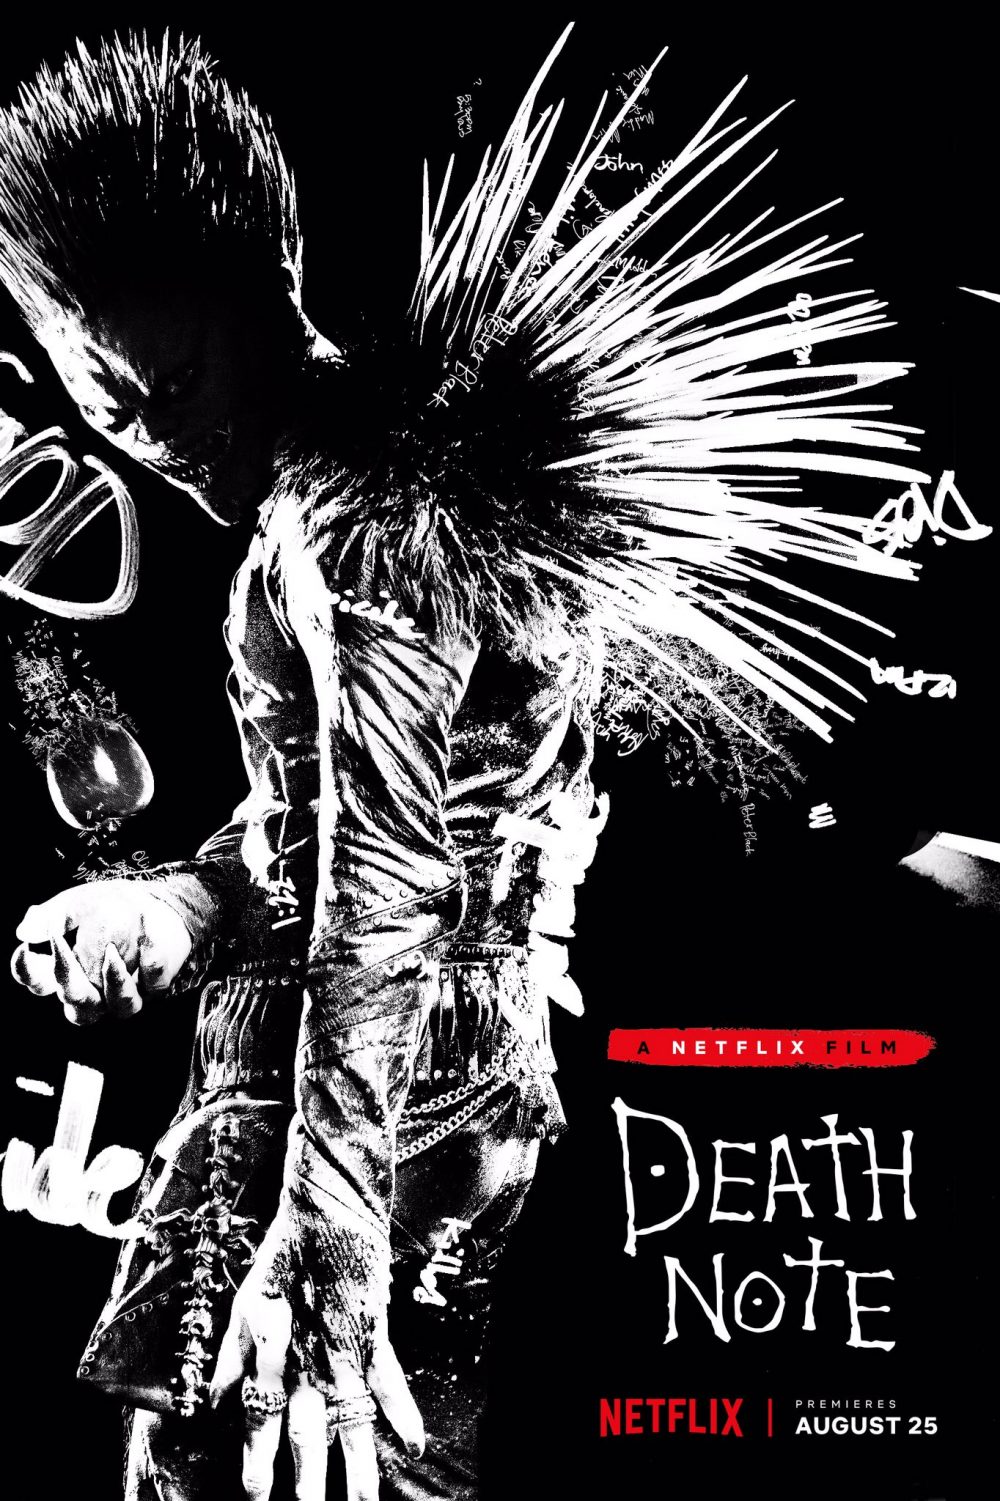 Trailer completo para la versión de Death Note de Netflix - main visual